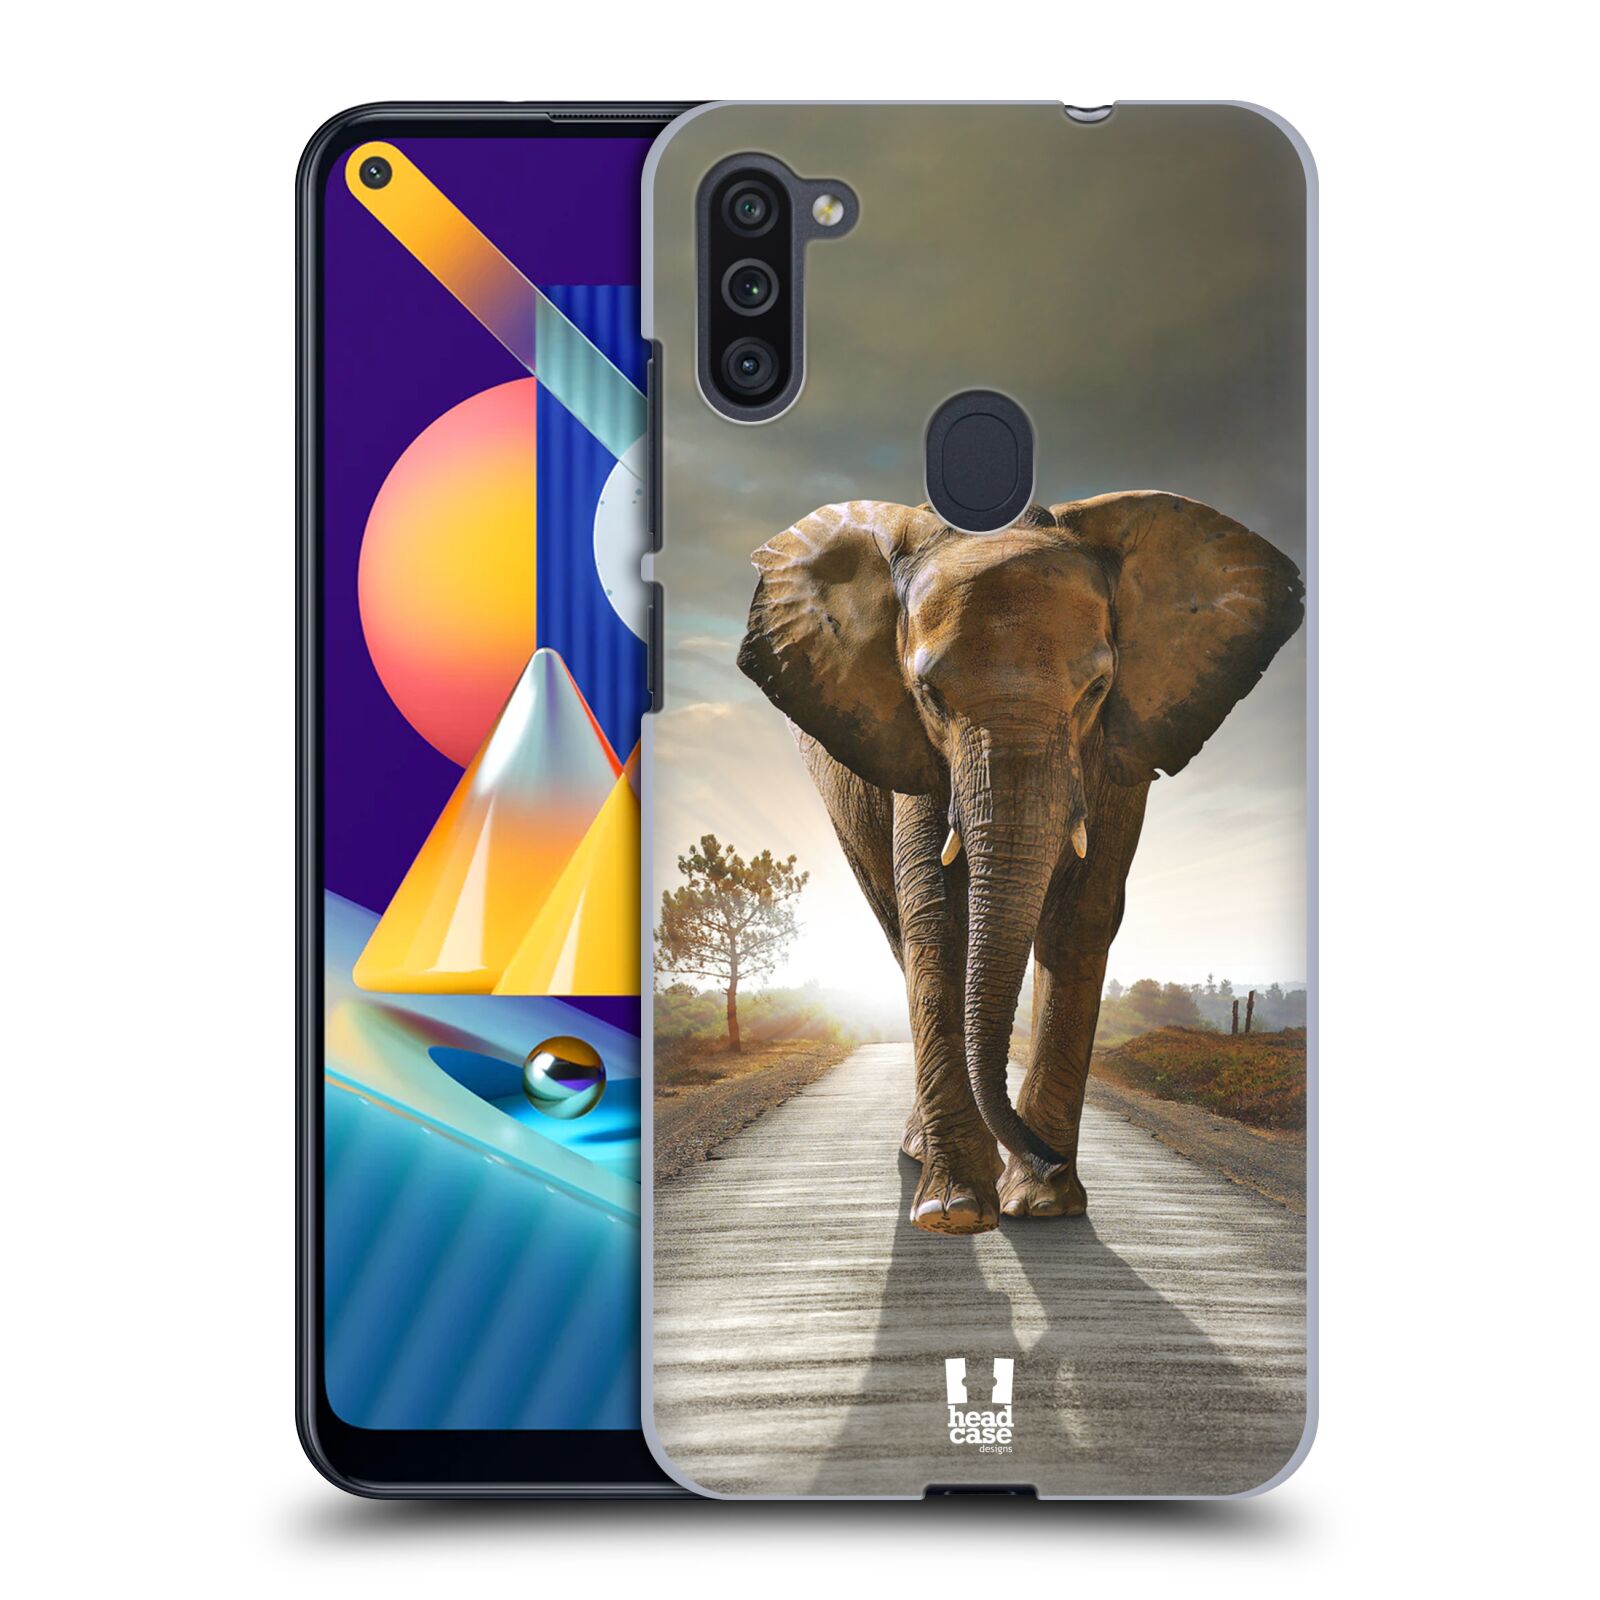 Zadní obal pro mobil Samsung Galaxy M11 - HEAD CASE - Svět zvířat kráčející slon